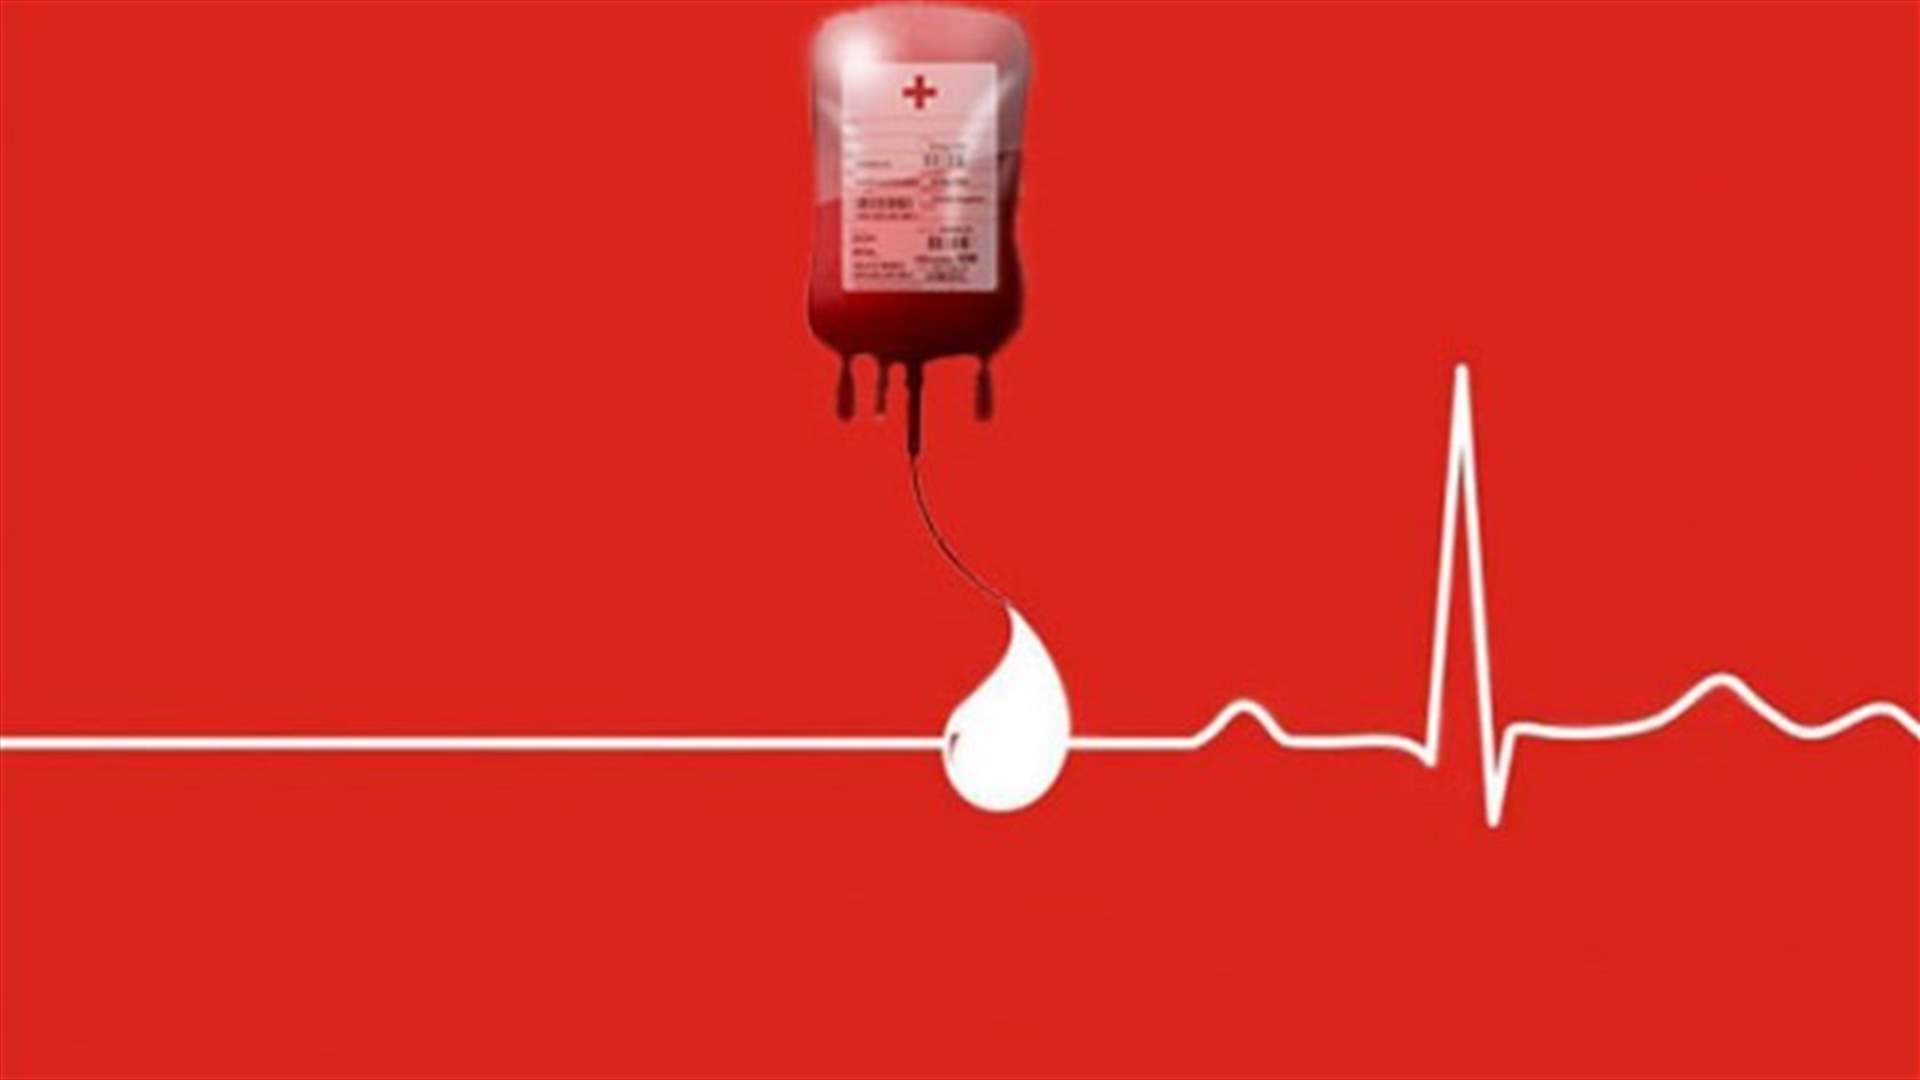 مريض بحاجة ماسة لـ4 وحدات دم و2 بلاكيت من فئة O+ في مستشفى الجعيتاوي... للتبرع الرجاء الاتصال على الرقم التالي: 03412704